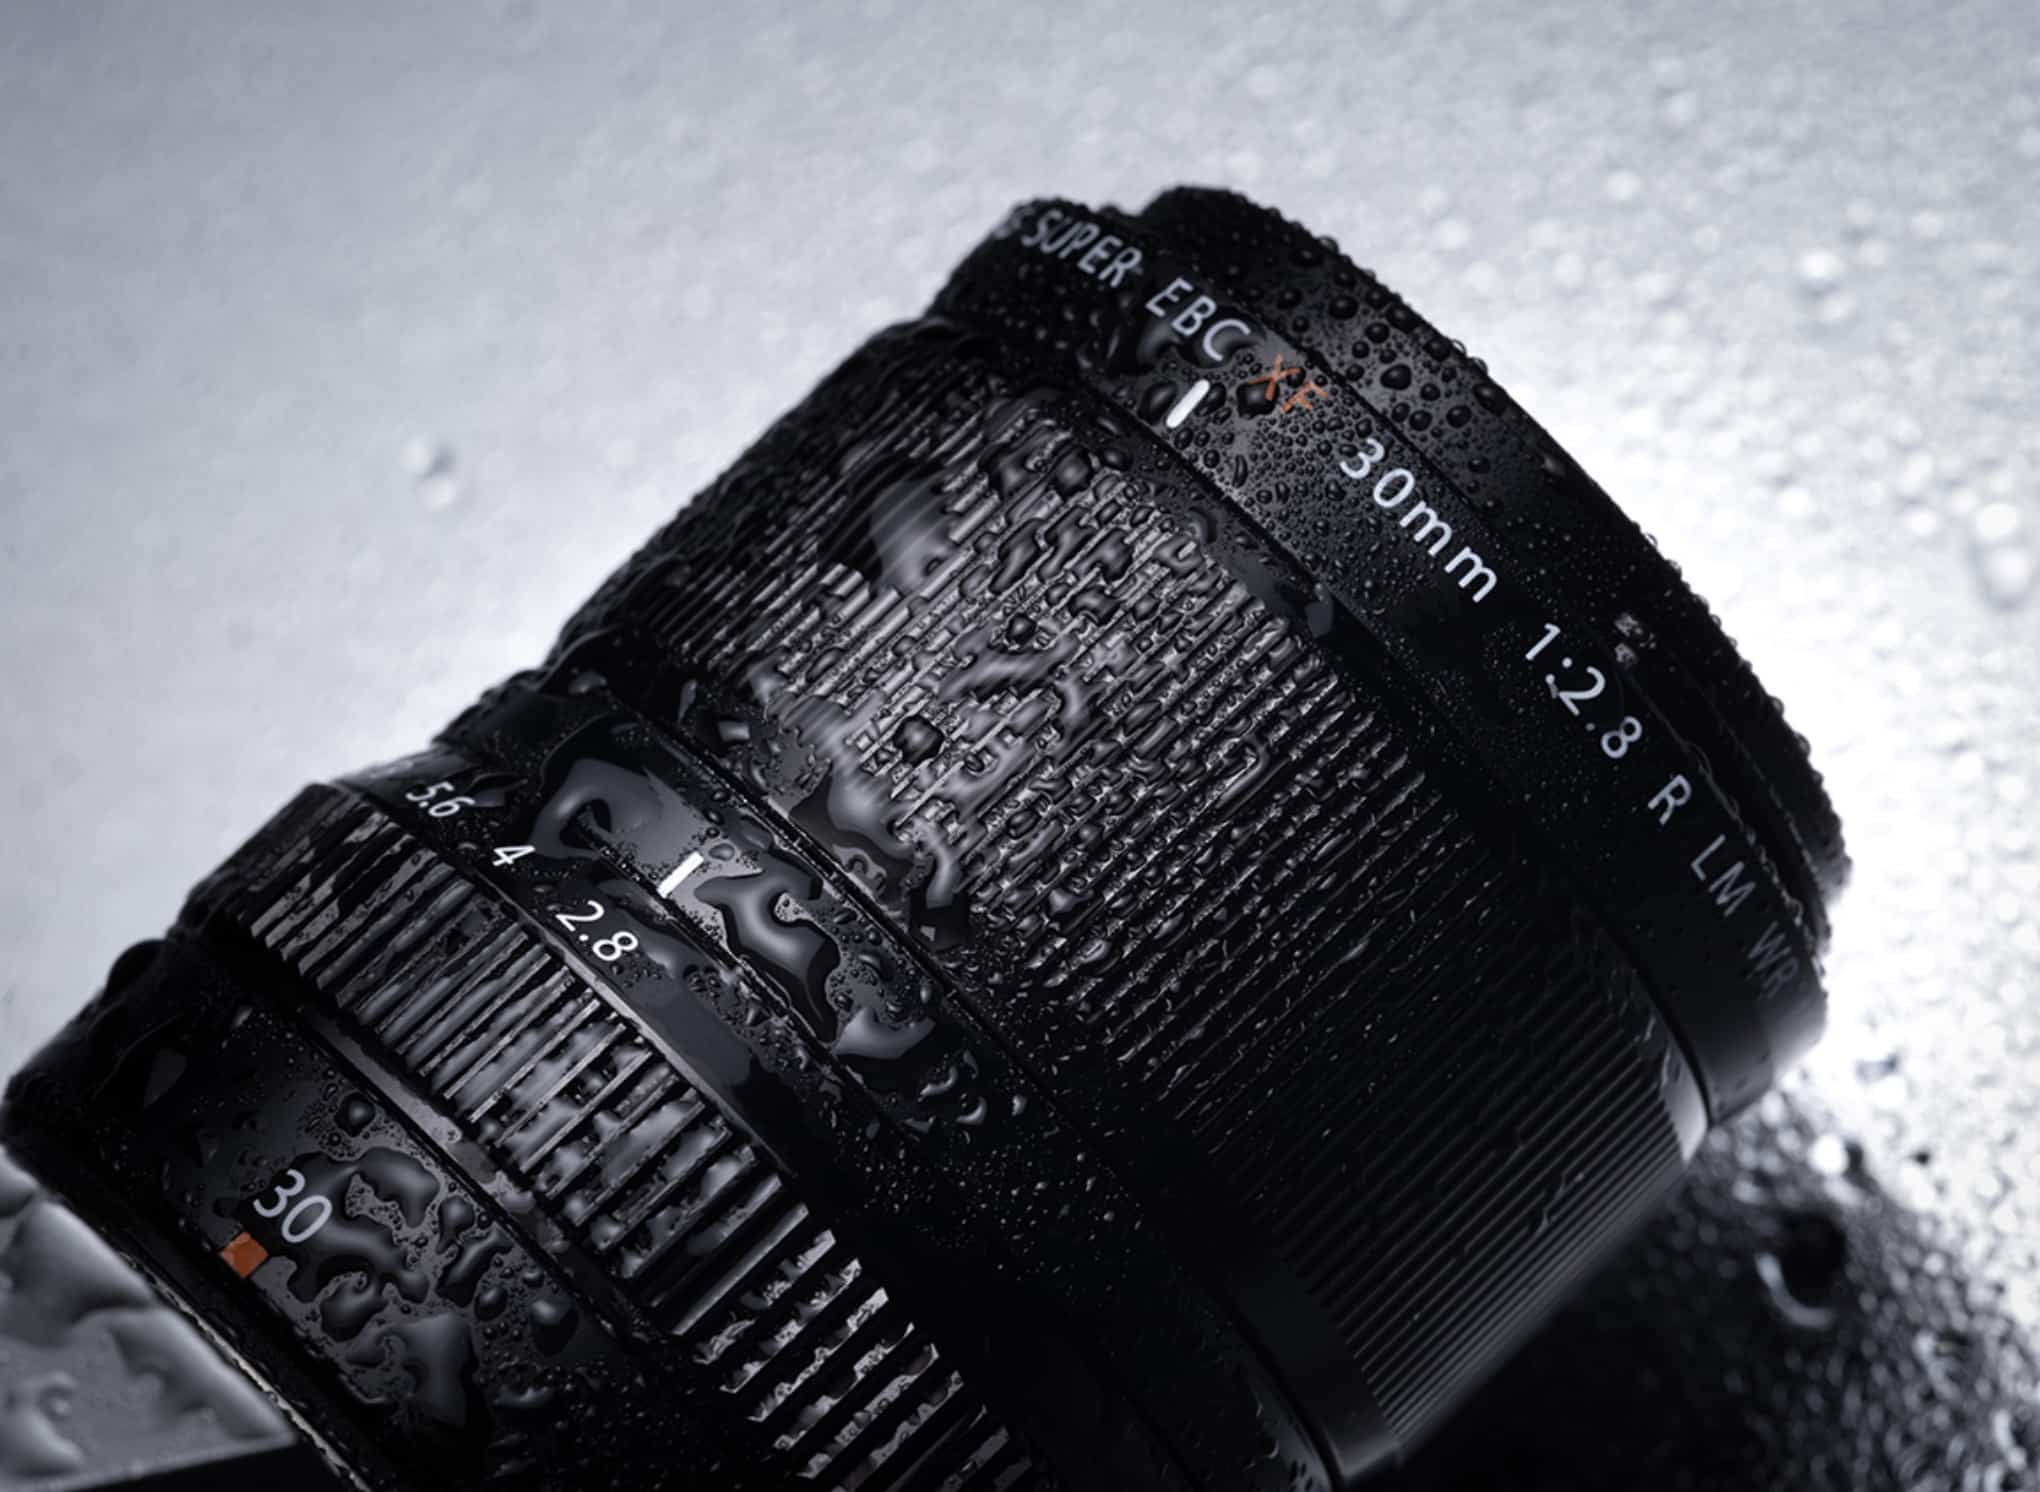 Fujifilm ra mắt ống kính XF 30mm F2.8 Macro gọn nhẹ và hiệu suất tốt